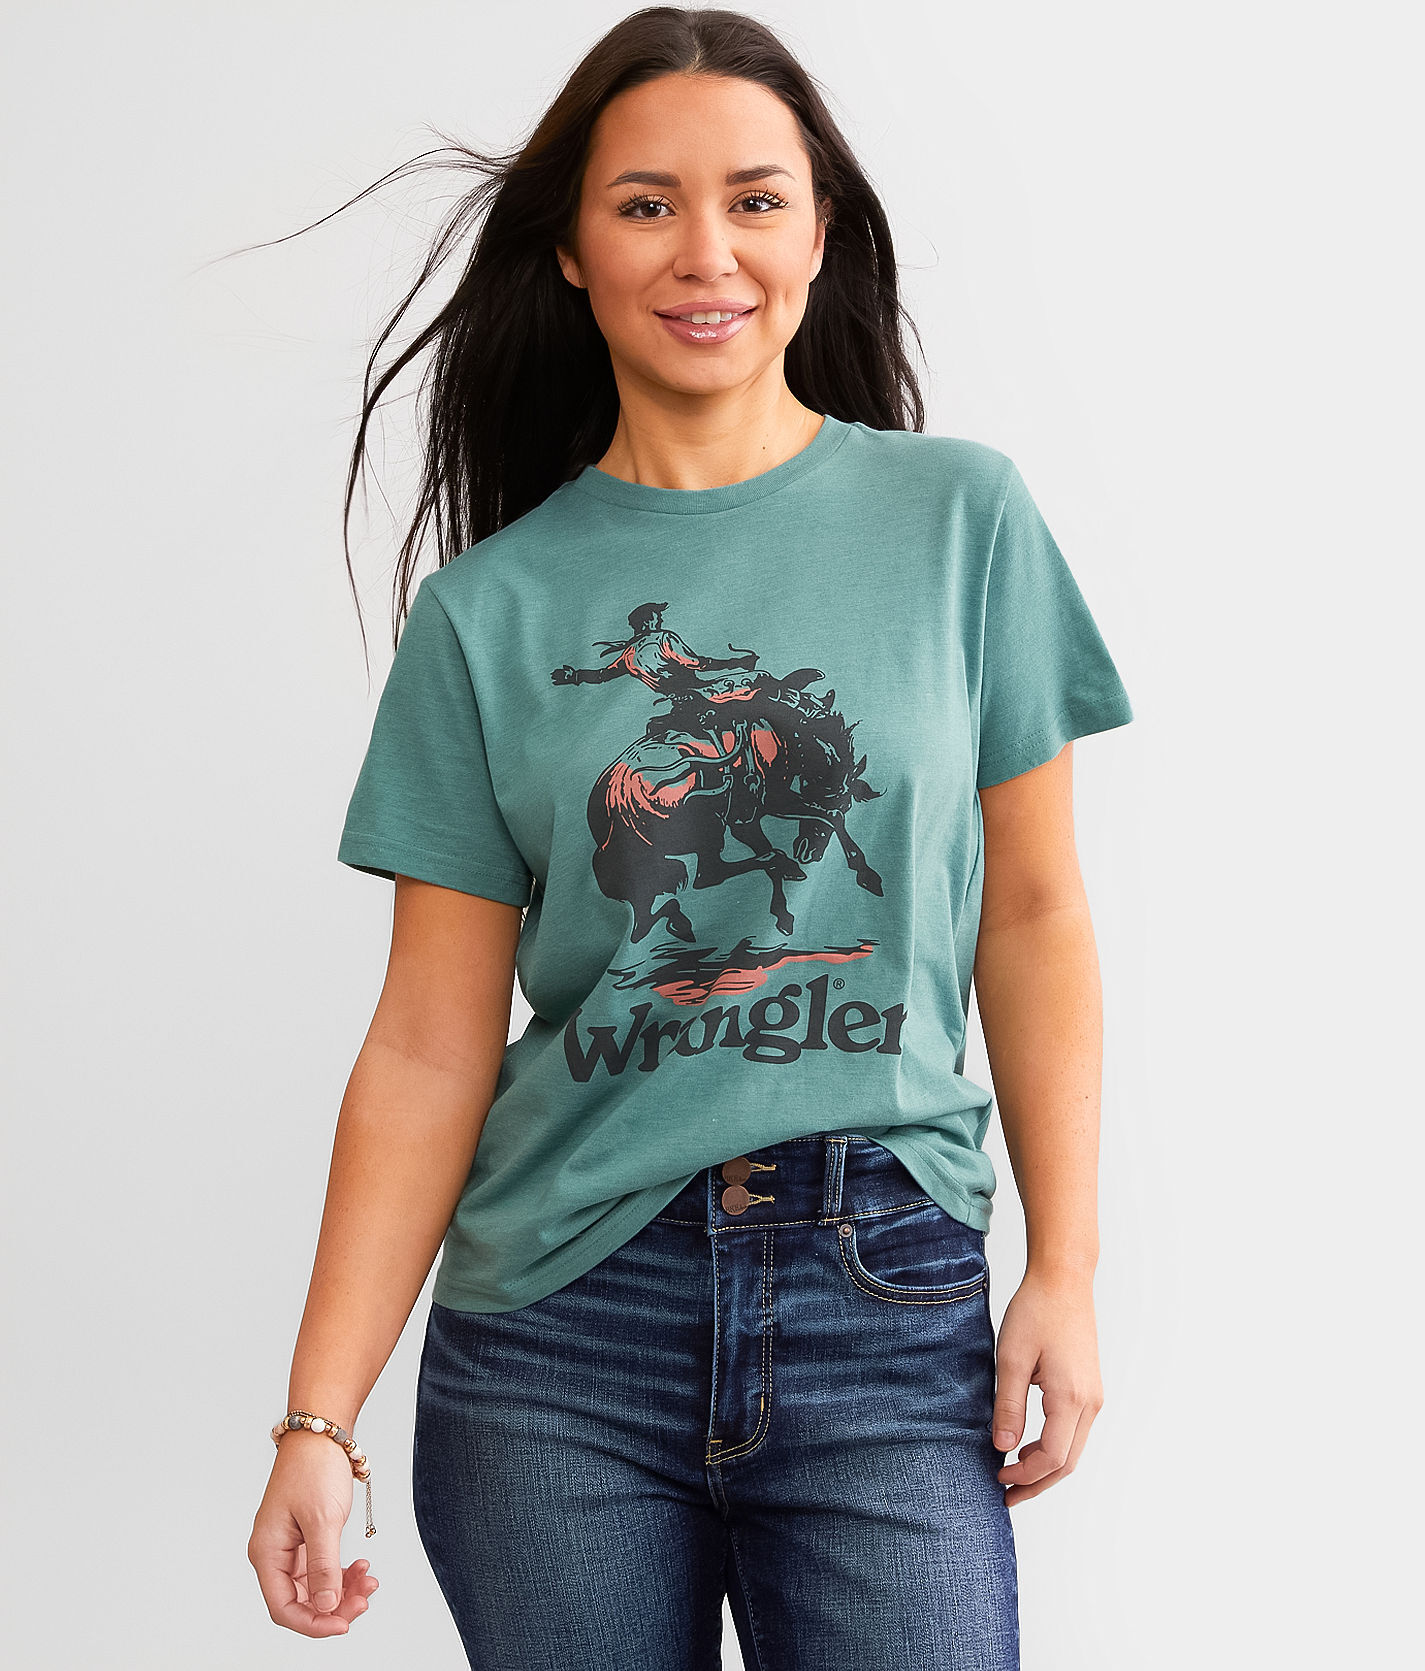 Wrangler Retro Horse Rider T-Shirt  - Green - female - Size: Extra Large